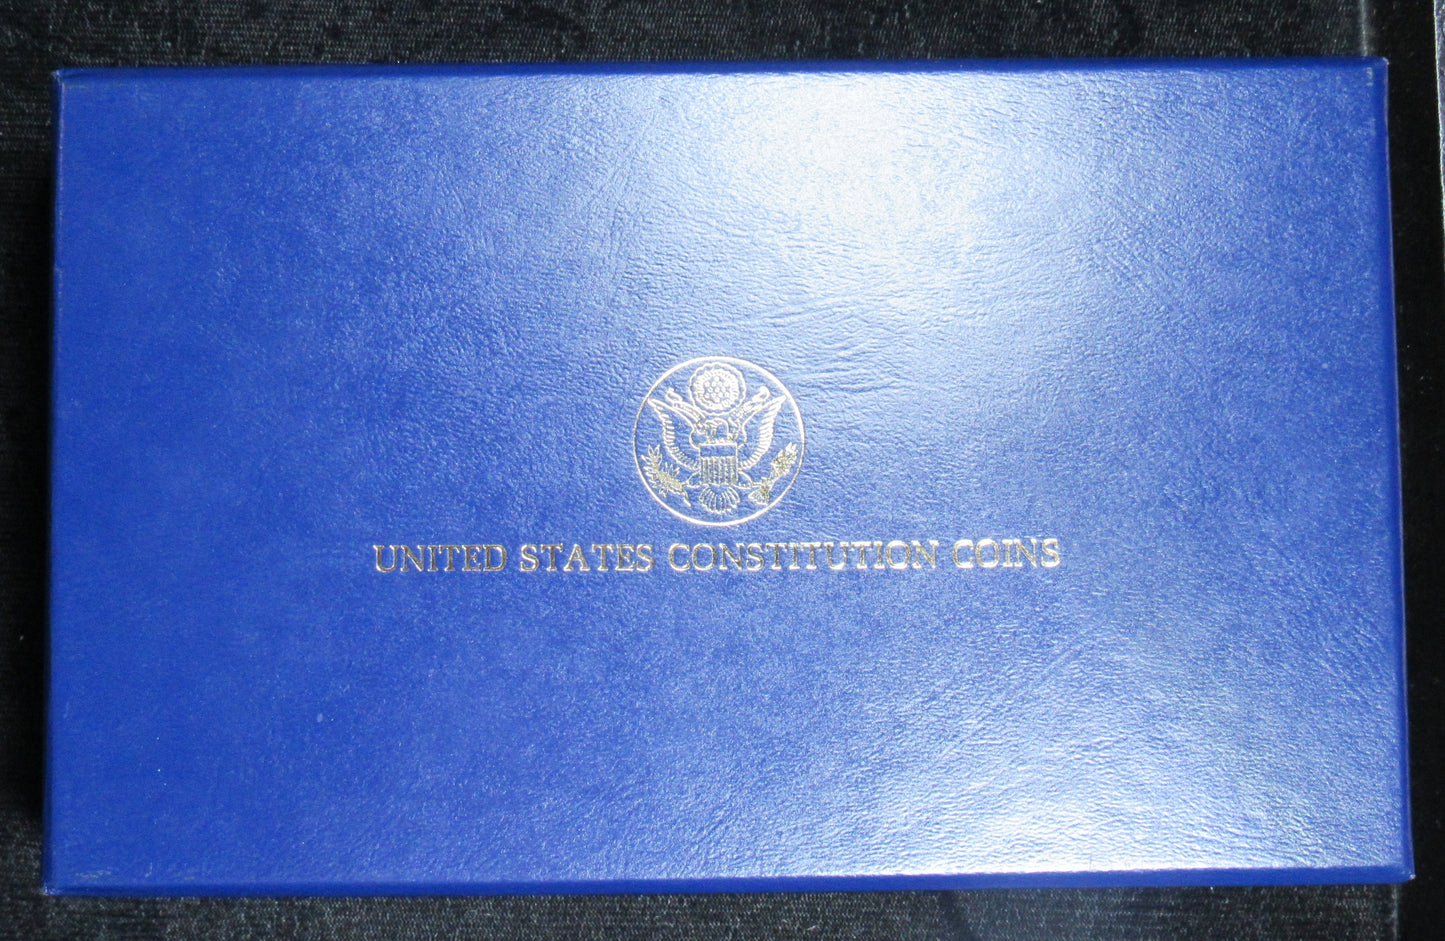 1987 4-Coin Commemorative Constitution Set BU & Proof (w/Box & COA)